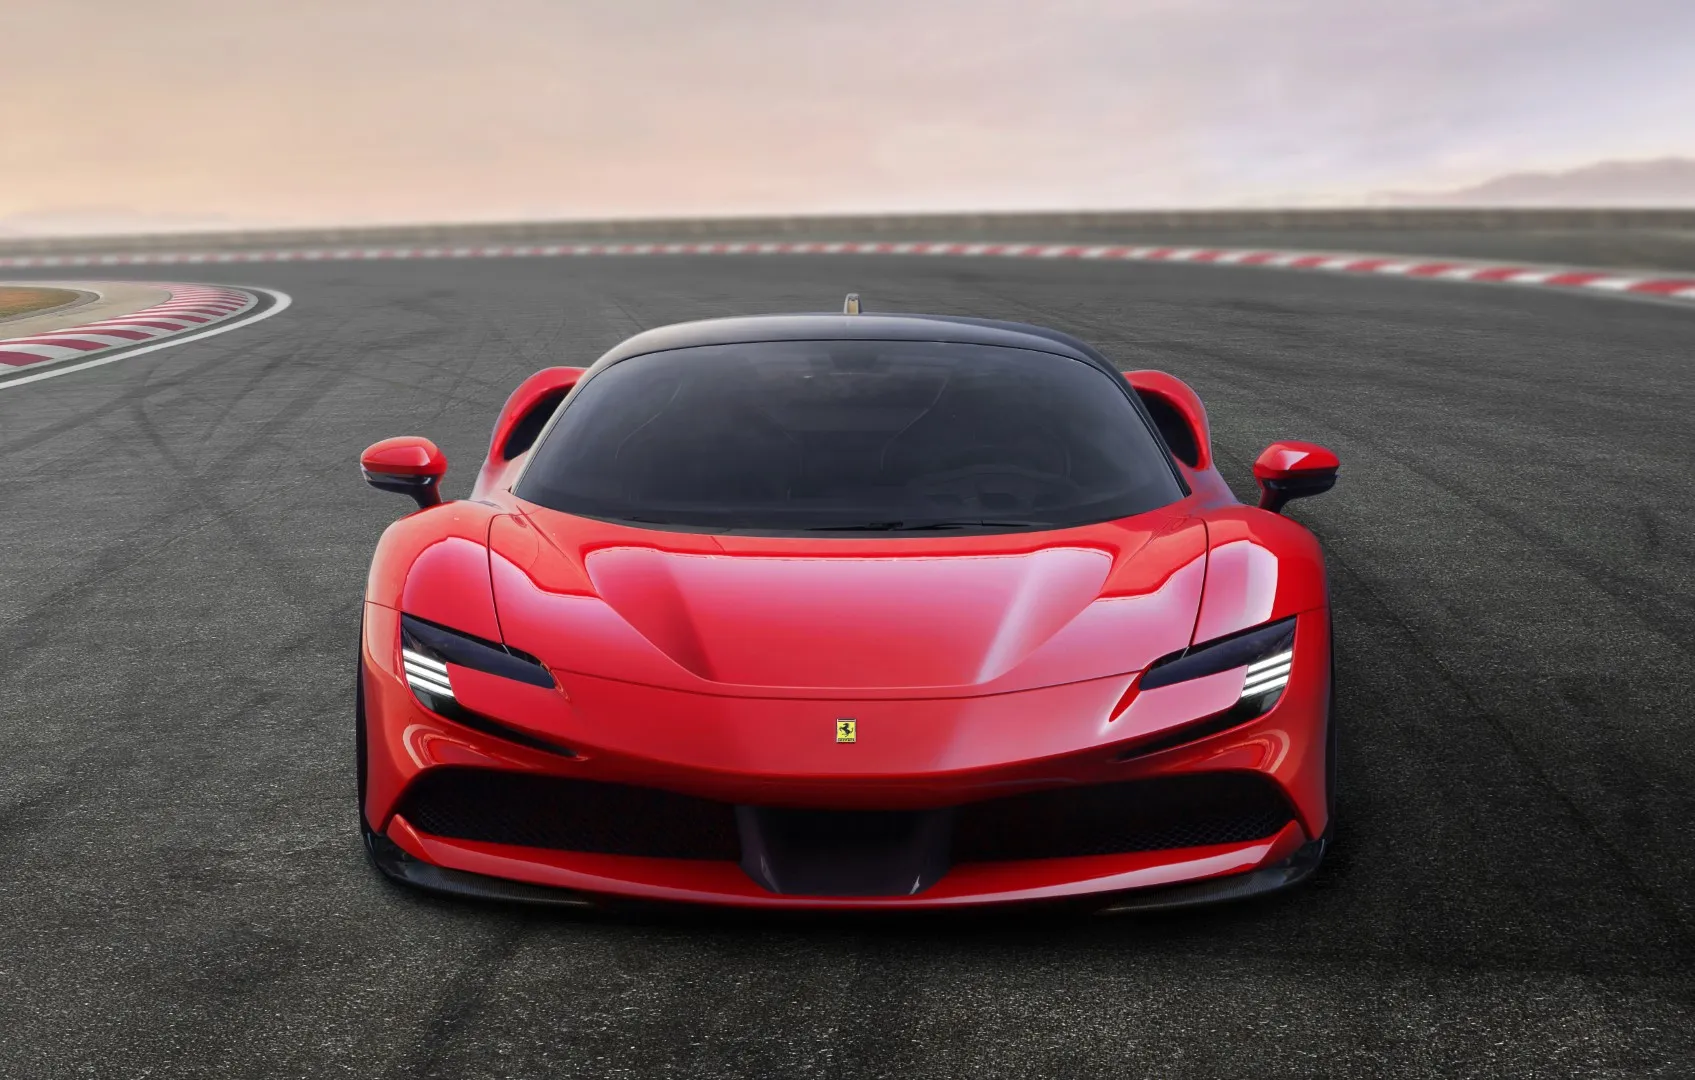 Harga Mobil Ferrari Terbaru 2020